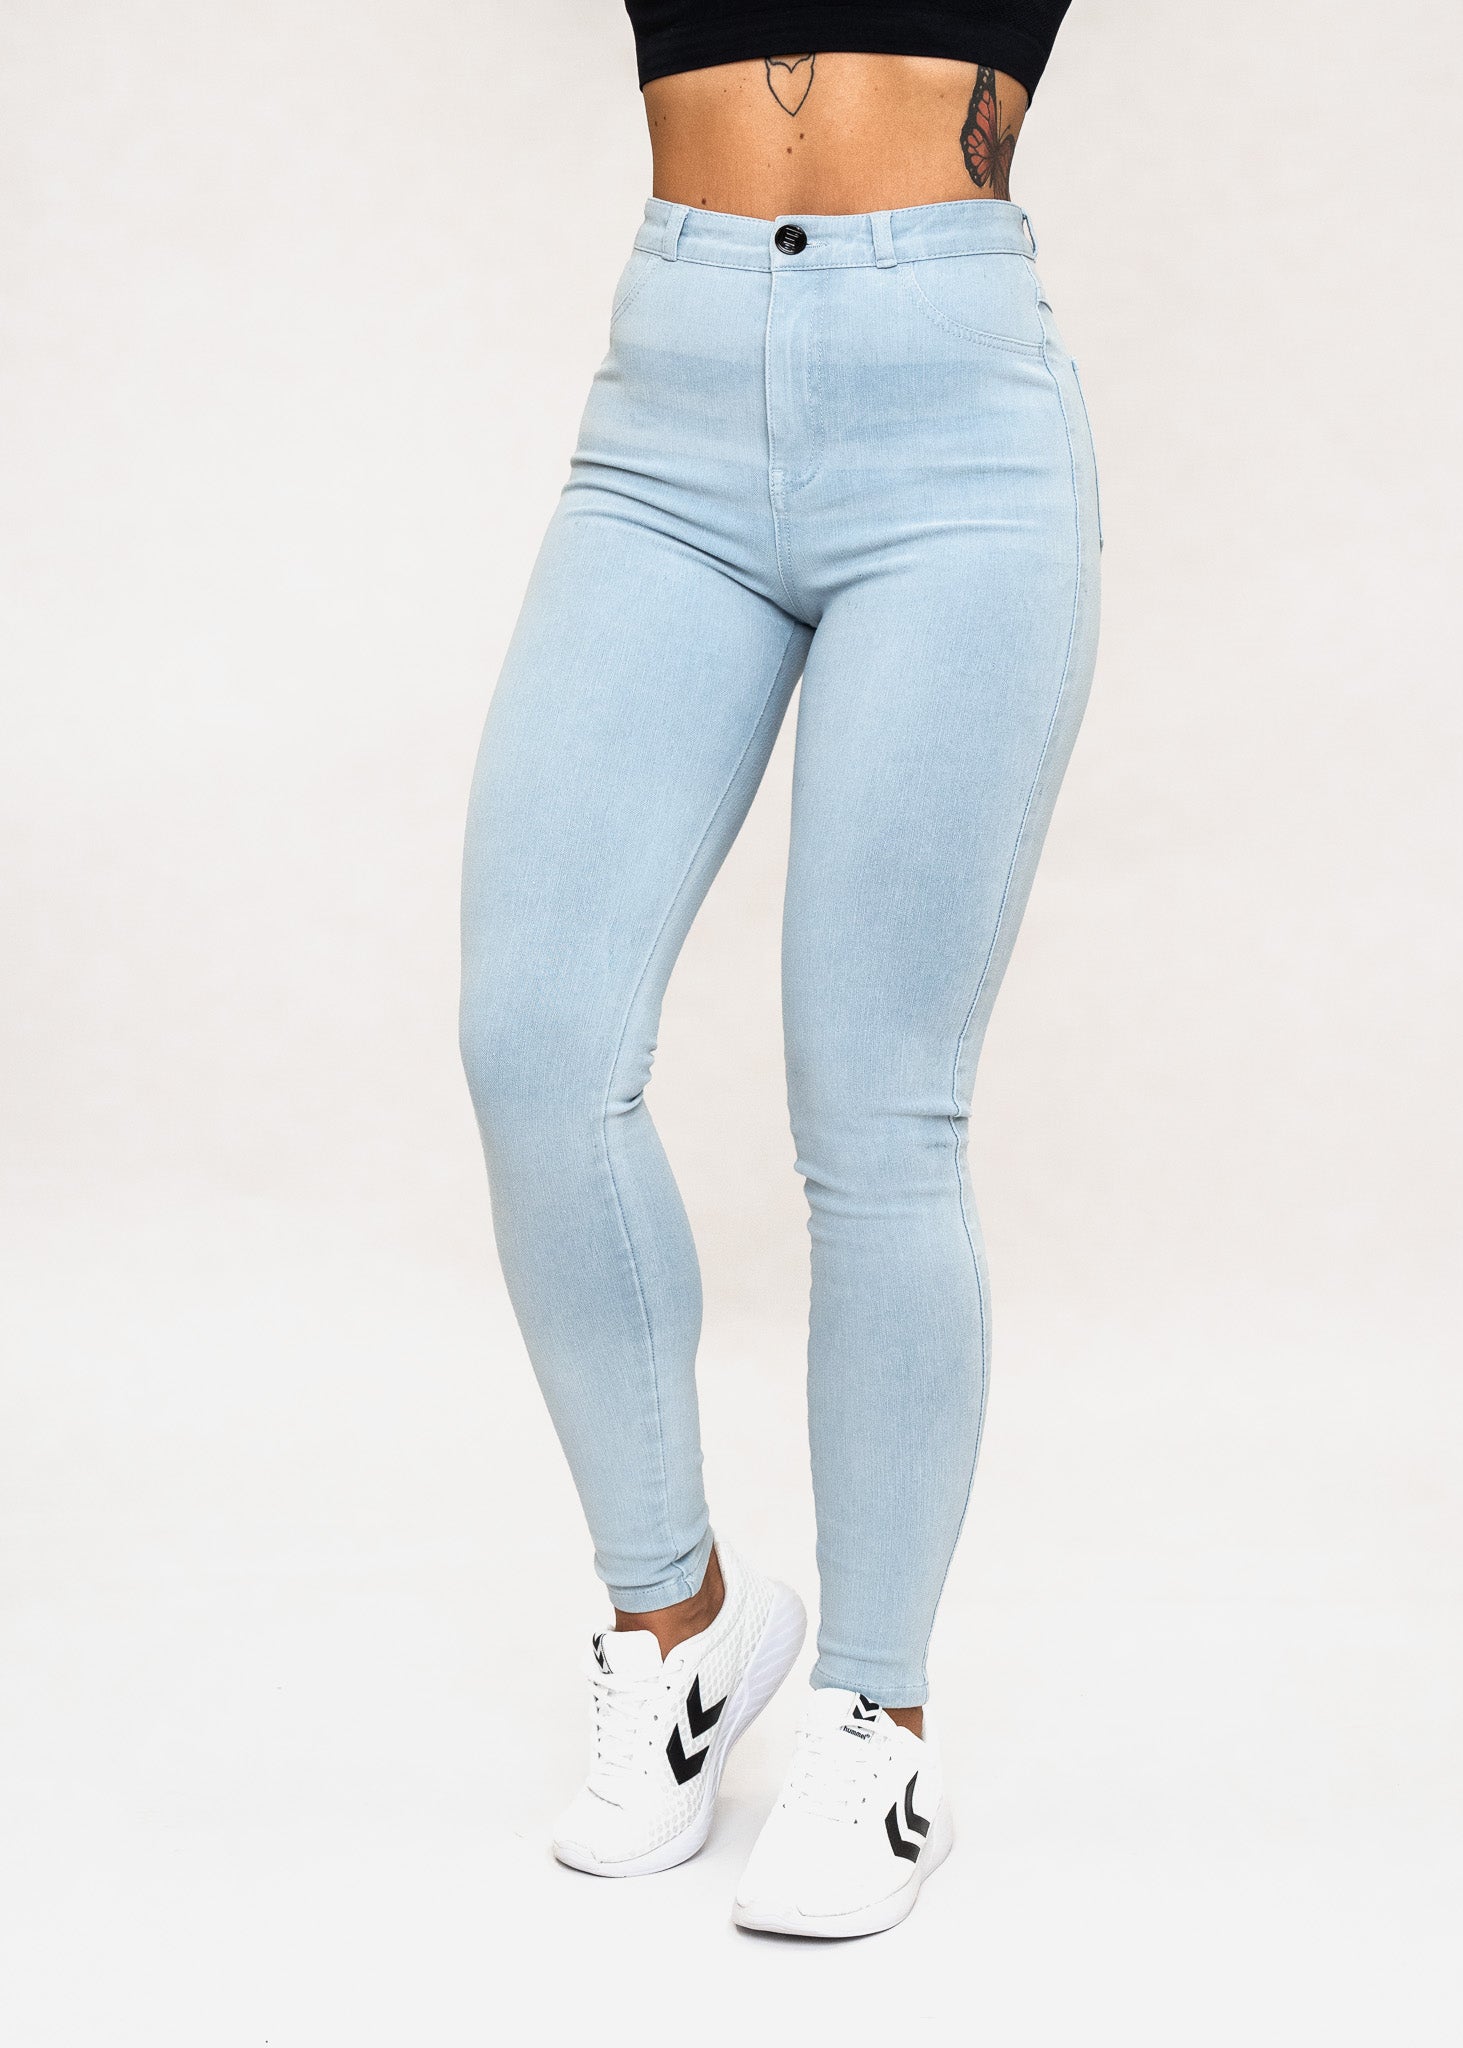 EMBRACE - Dames Spijkerbroeken met Hoge taille - Sky Blue